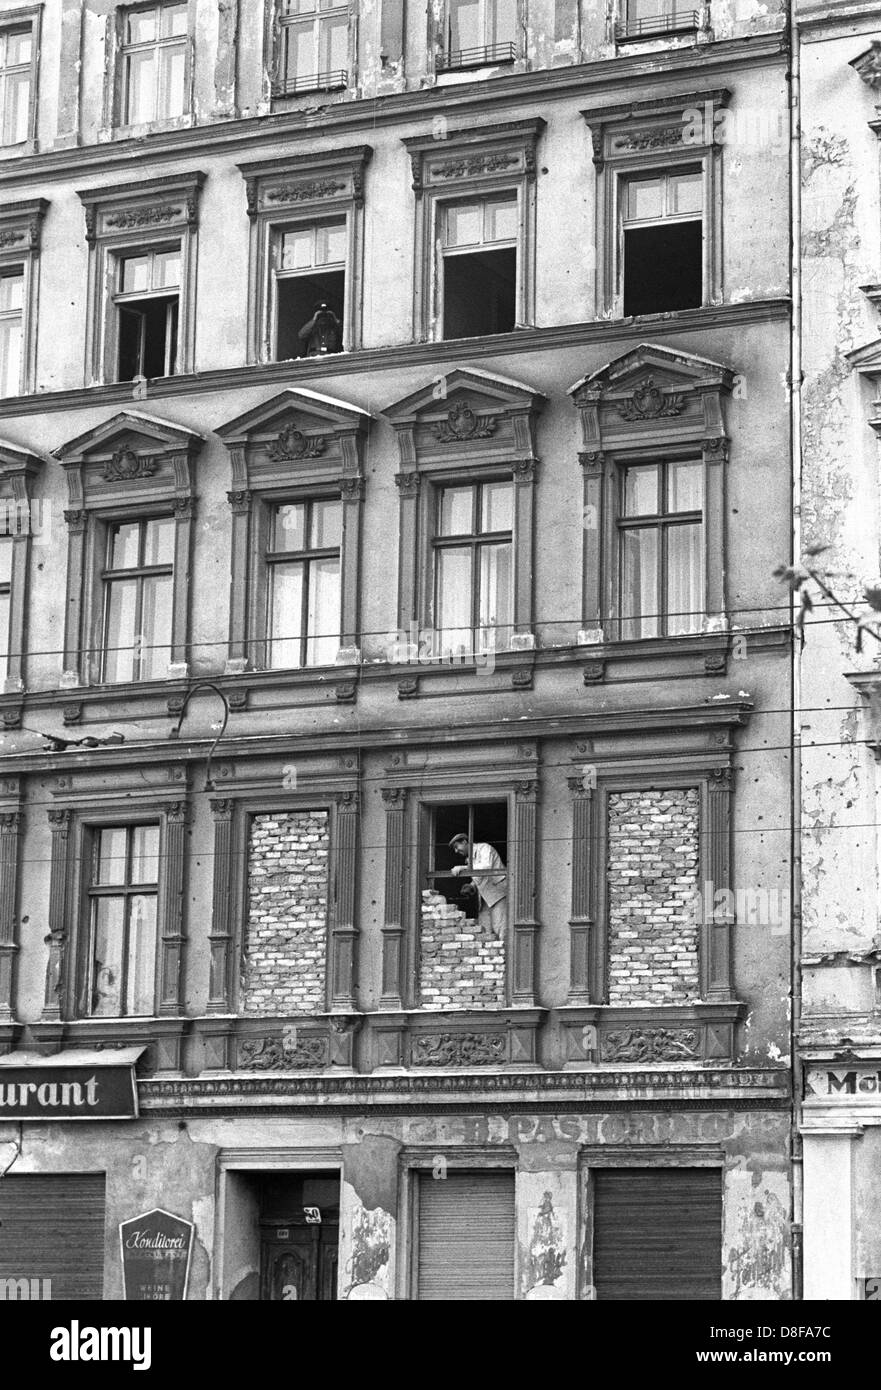 Grenzhäuser in einem der an der Bernauerstraße werden am 1. Oktober 1961 Fenster, die den Blick auf Berlin Ouest freigeben, zugemauert. Kurz nach dem Mauerbau Menschen sind aus den Fenstern der im Ostteil der Stadt gelegenen Häuser auf die zum Westteil gehörende geflüchtet Bernauer Straße. Am frühen Sonntagmorgen des 13. Août 1961 wurde der unter Aufsicht von der DDR Streitkräften bewaffneten mit der Errichtung von Straßensperren Stacheldraht aus dem Bau und einer Mauer begonnen, um den Ostteil Westteil abzusperren Berlins vom. Die Mauer sollte den ständig steigenden von Flüchtlingsstrom- Ost Banque D'Images